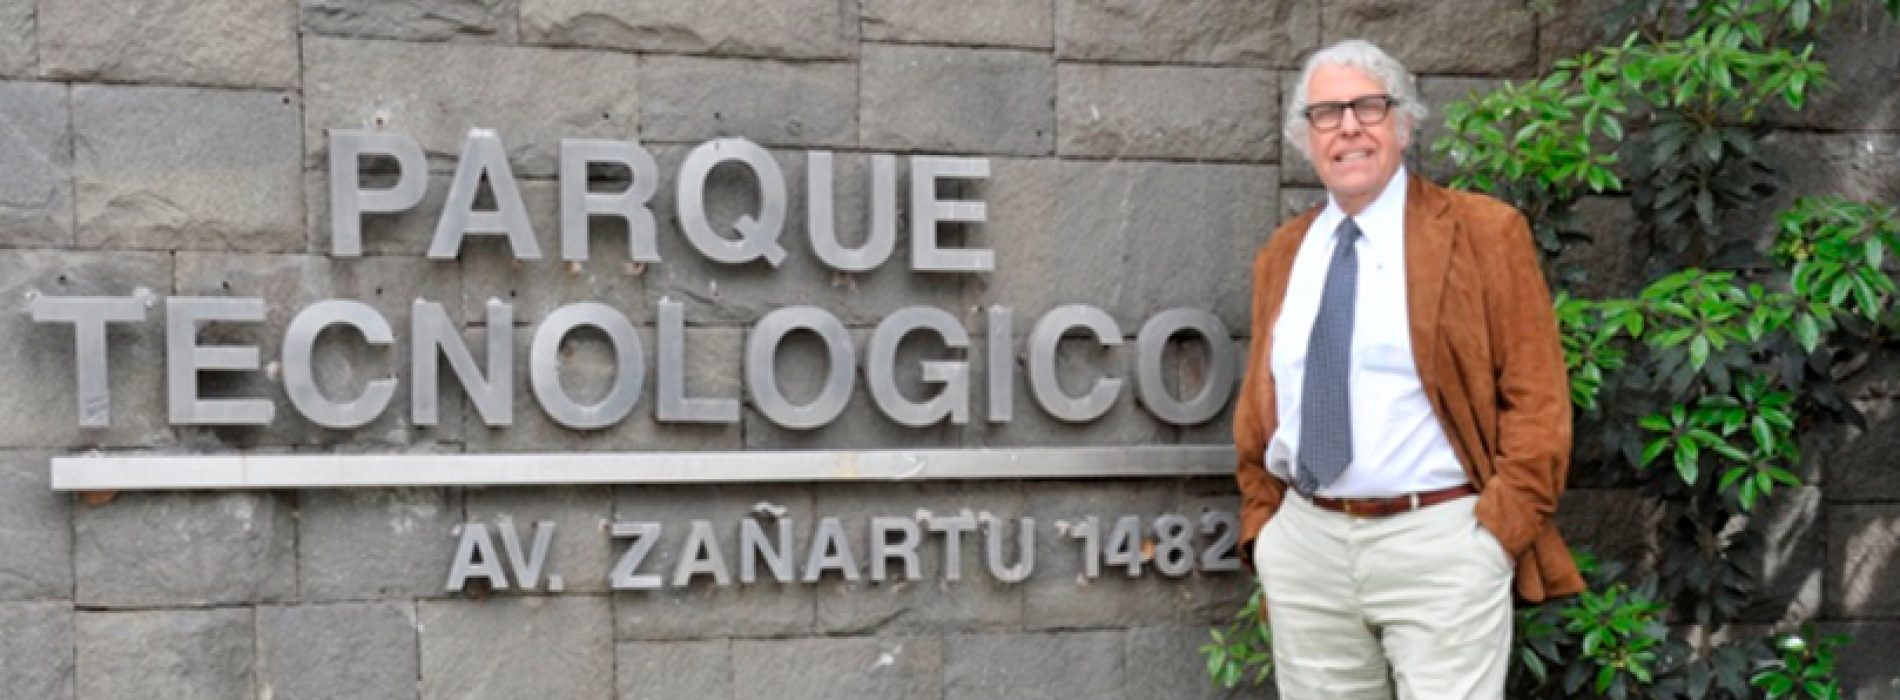 Pablo Valenzuela, Premio Tito Ureta confirmado XLI Reunión Anual de la Sociedad de Bioquímica y Biología Molecular de Chile, 25 al 28 de septiembre 2018, Iquique, Chile